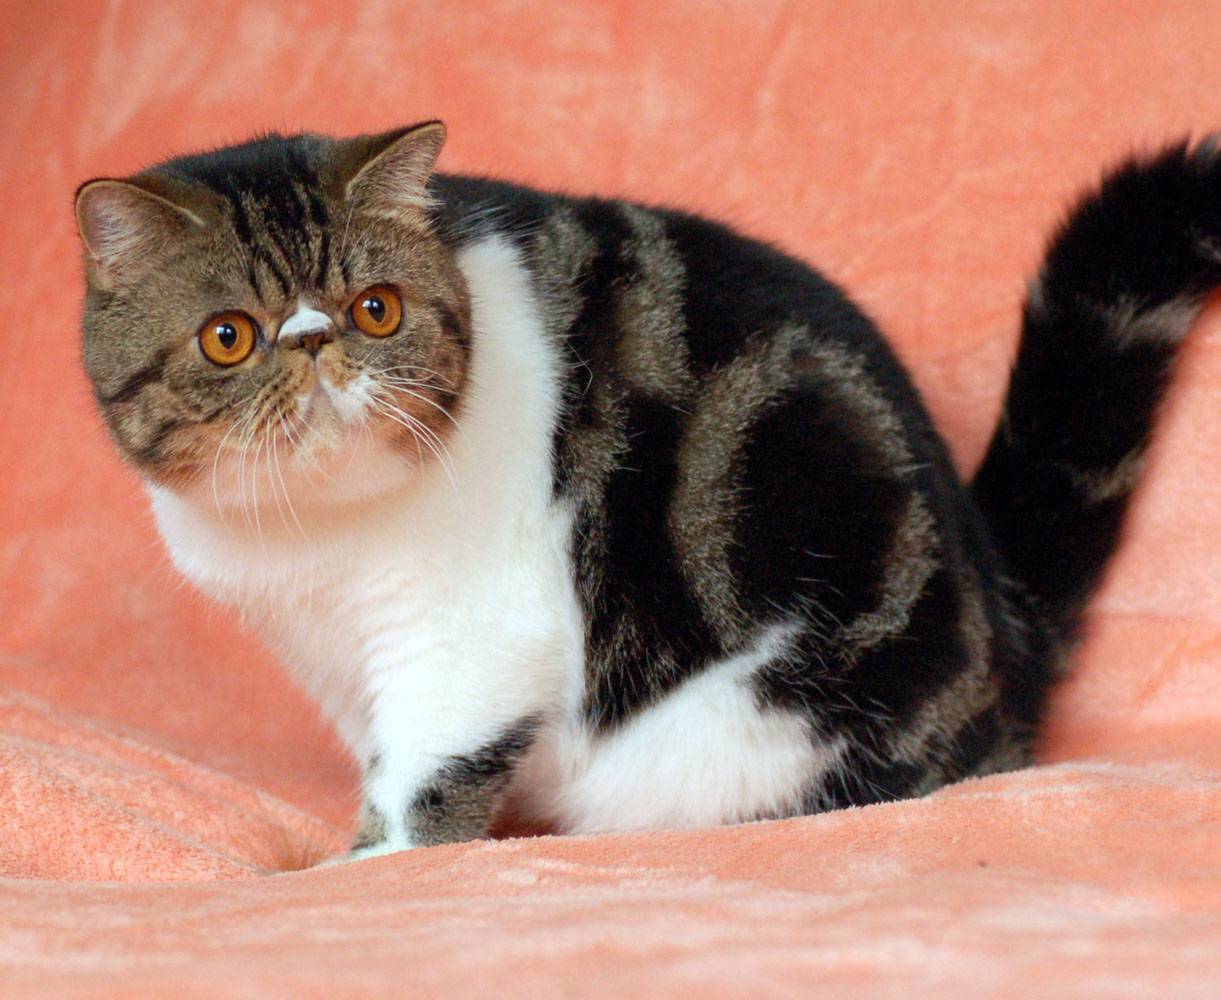 Экзотическая короткошерстная кошка